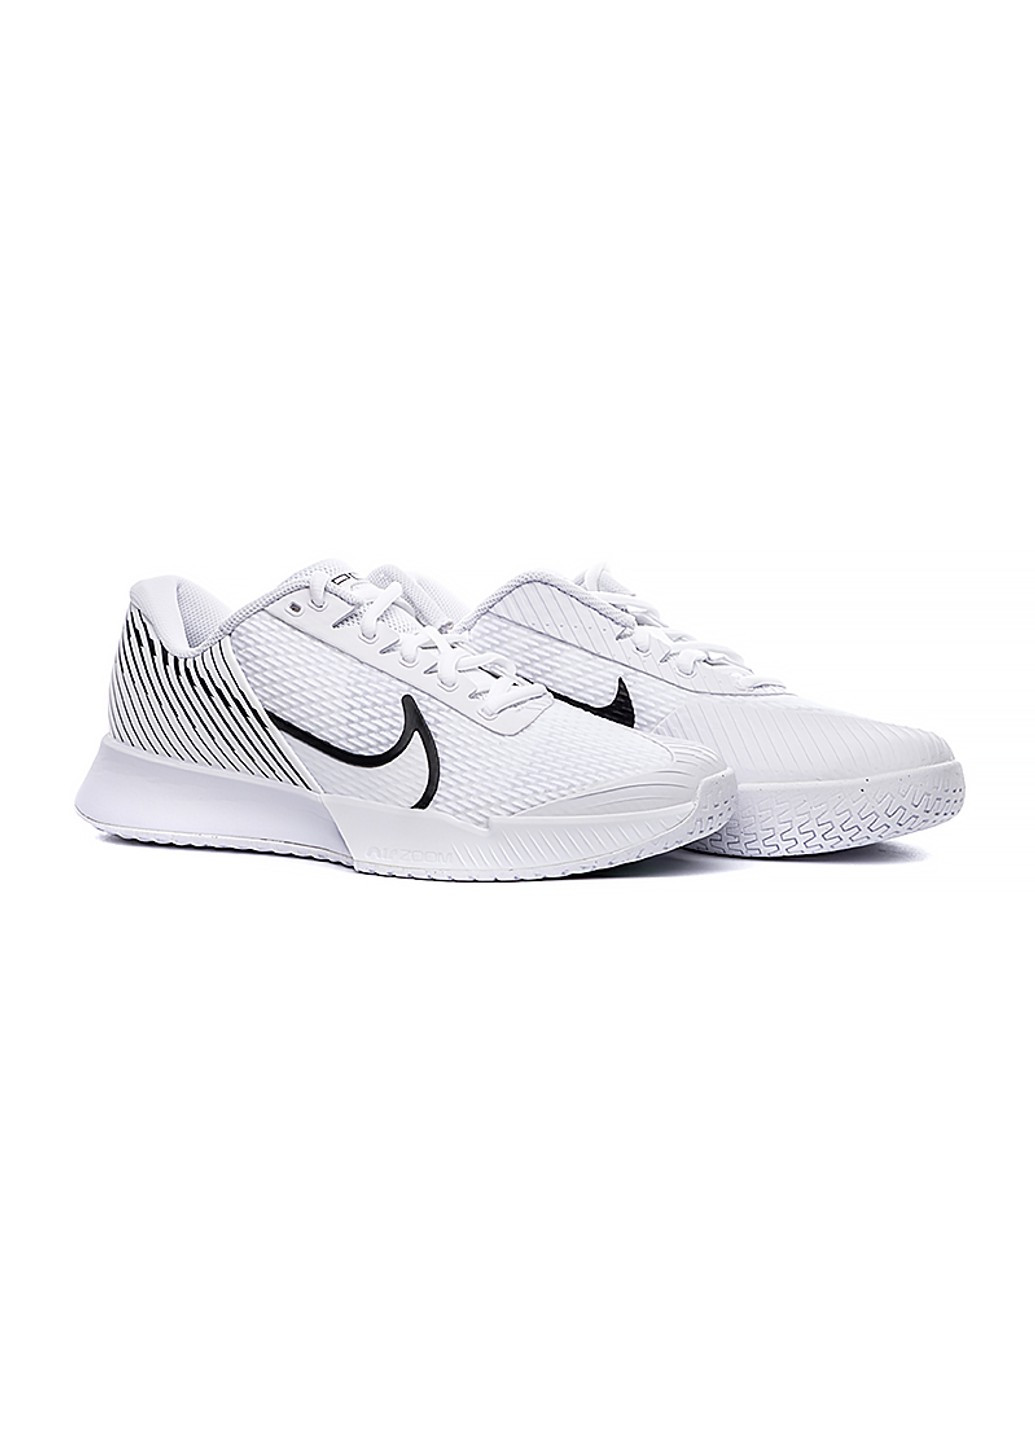 Білі всесезонні кросівки zoom vapor pro 2 hc Nike